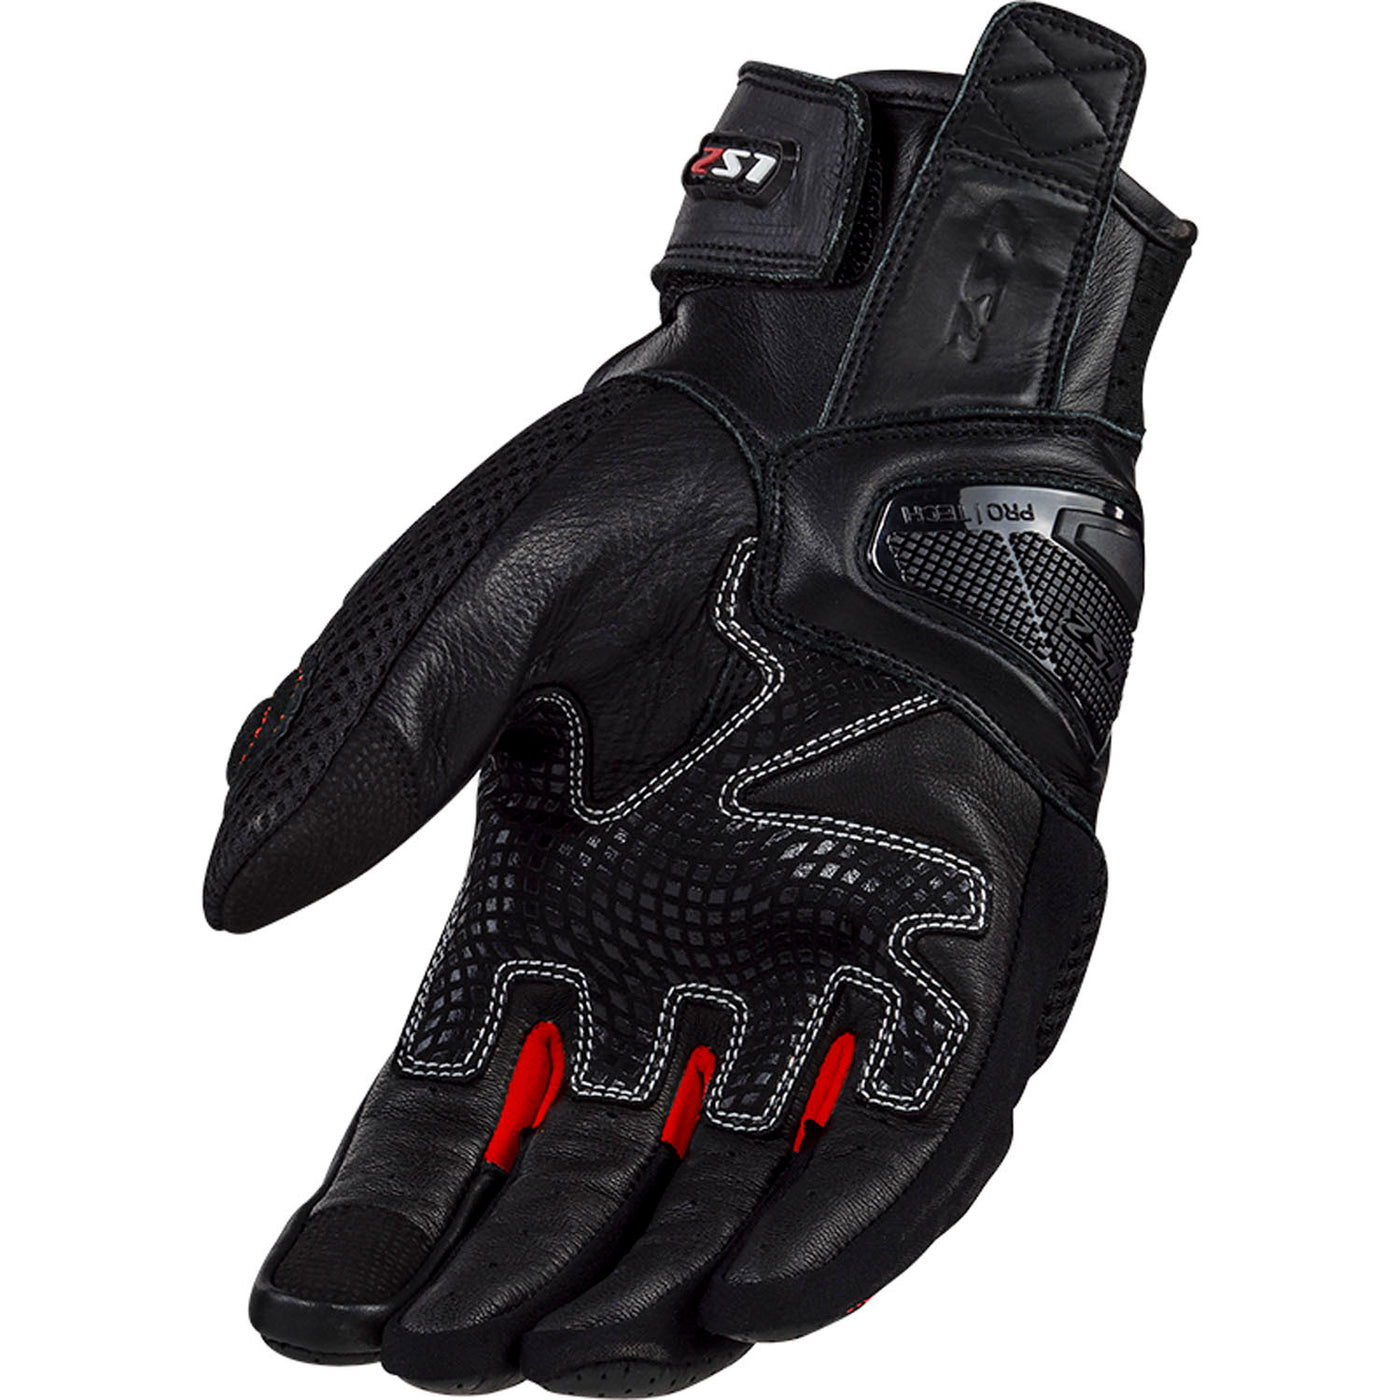 LS2 Helmets Spark II Men's Motorcycle Glove